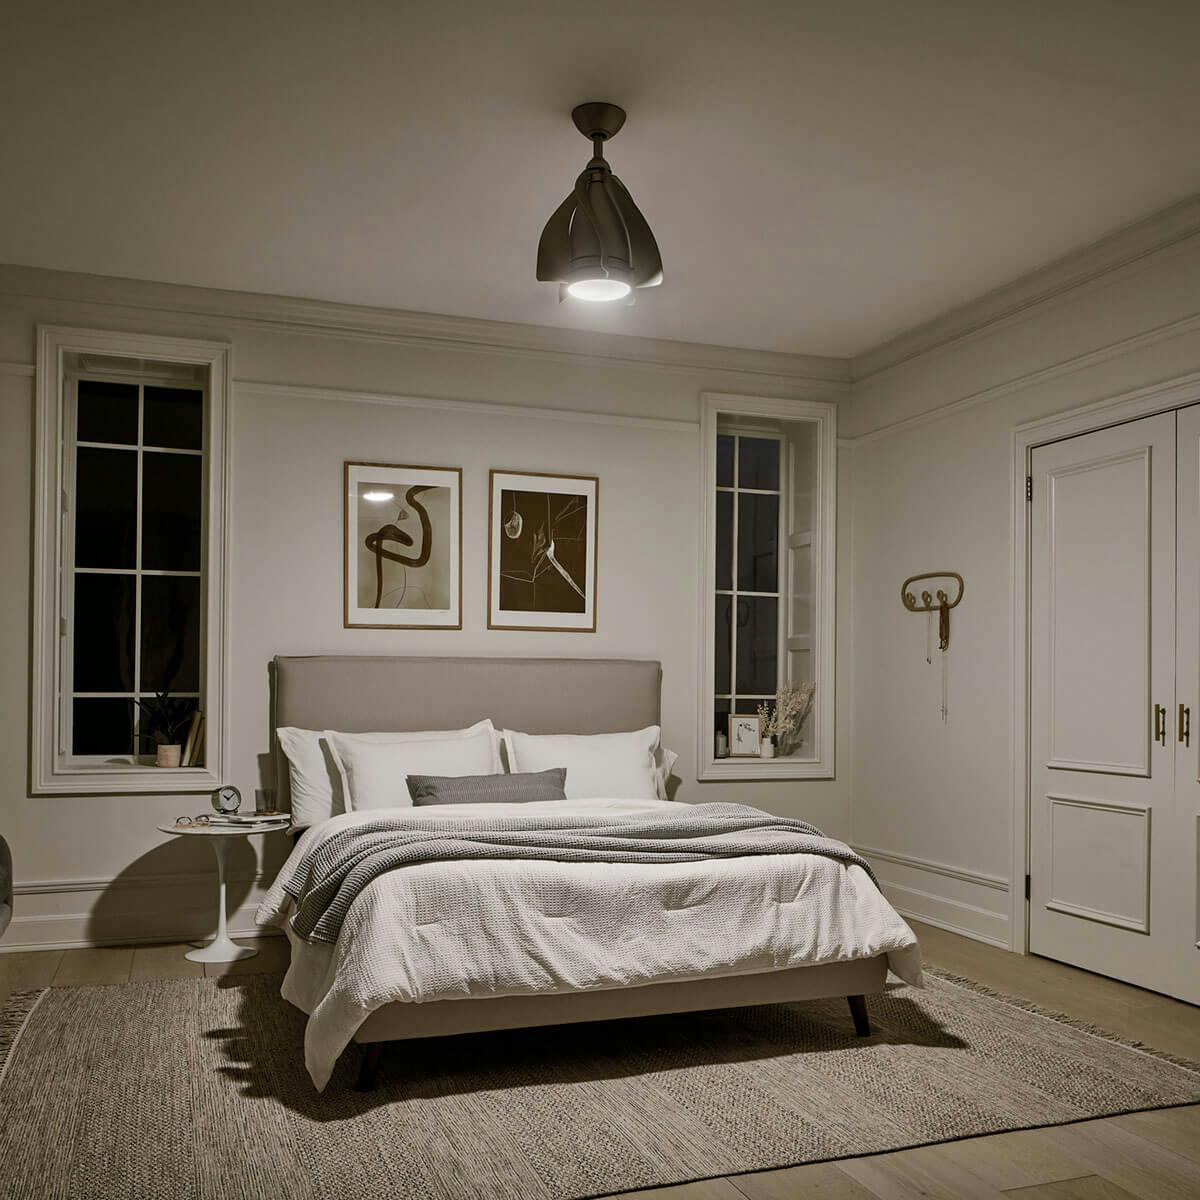 Night timebedroom image featuring Terna 300230NI